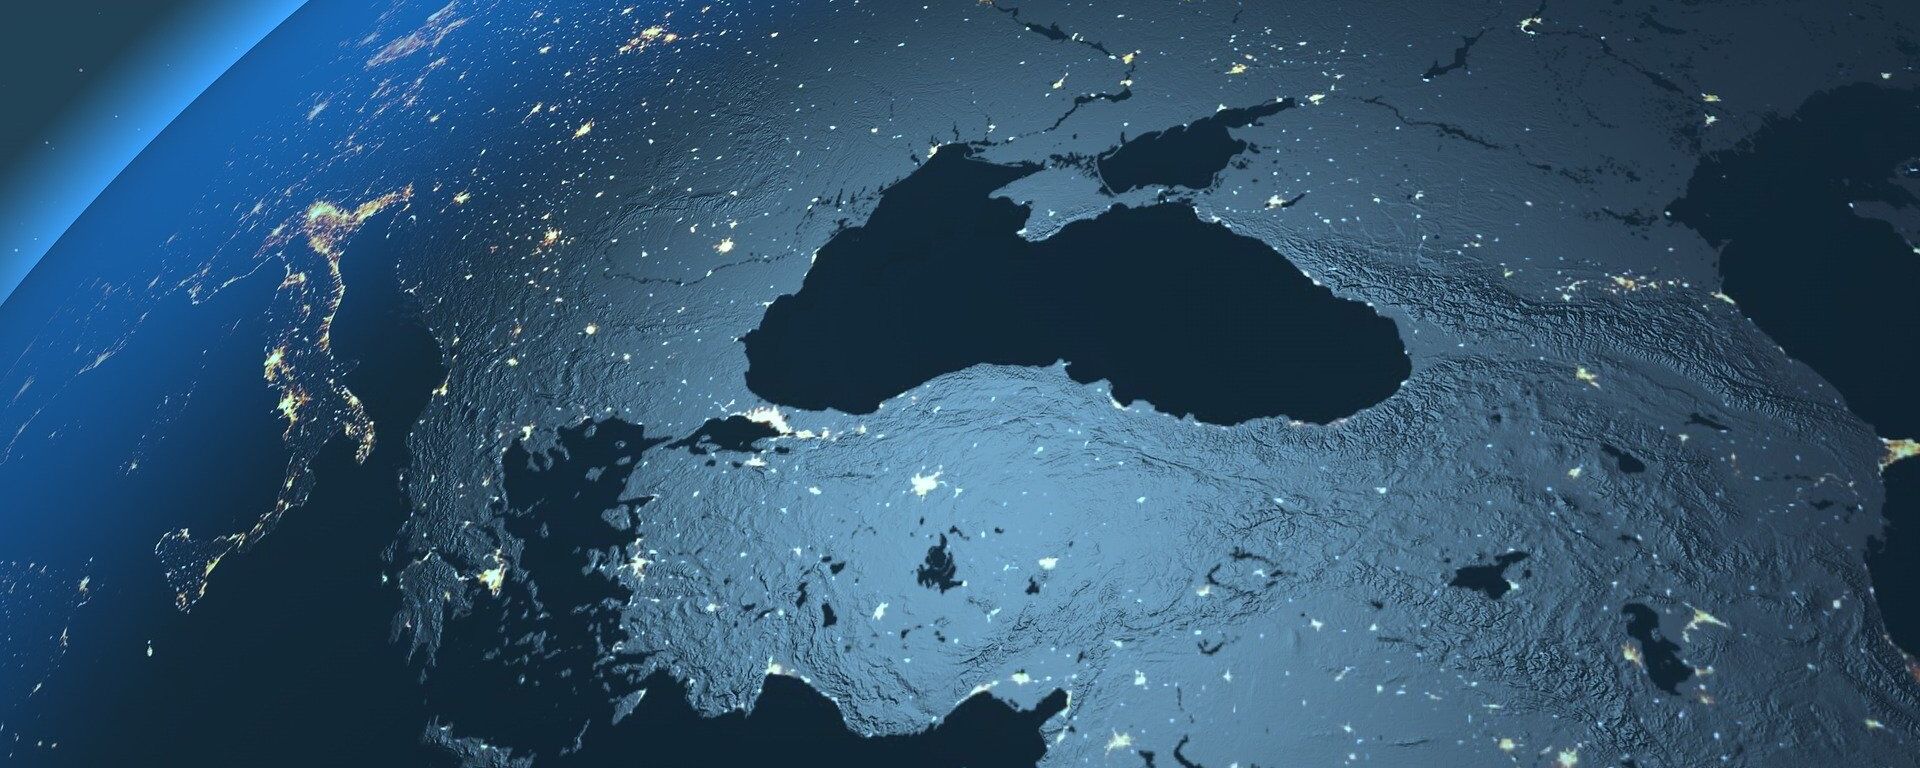 El mar Negro visto desde el espacio (imagen referencial) - Sputnik Mundo, 1920, 20.04.2021